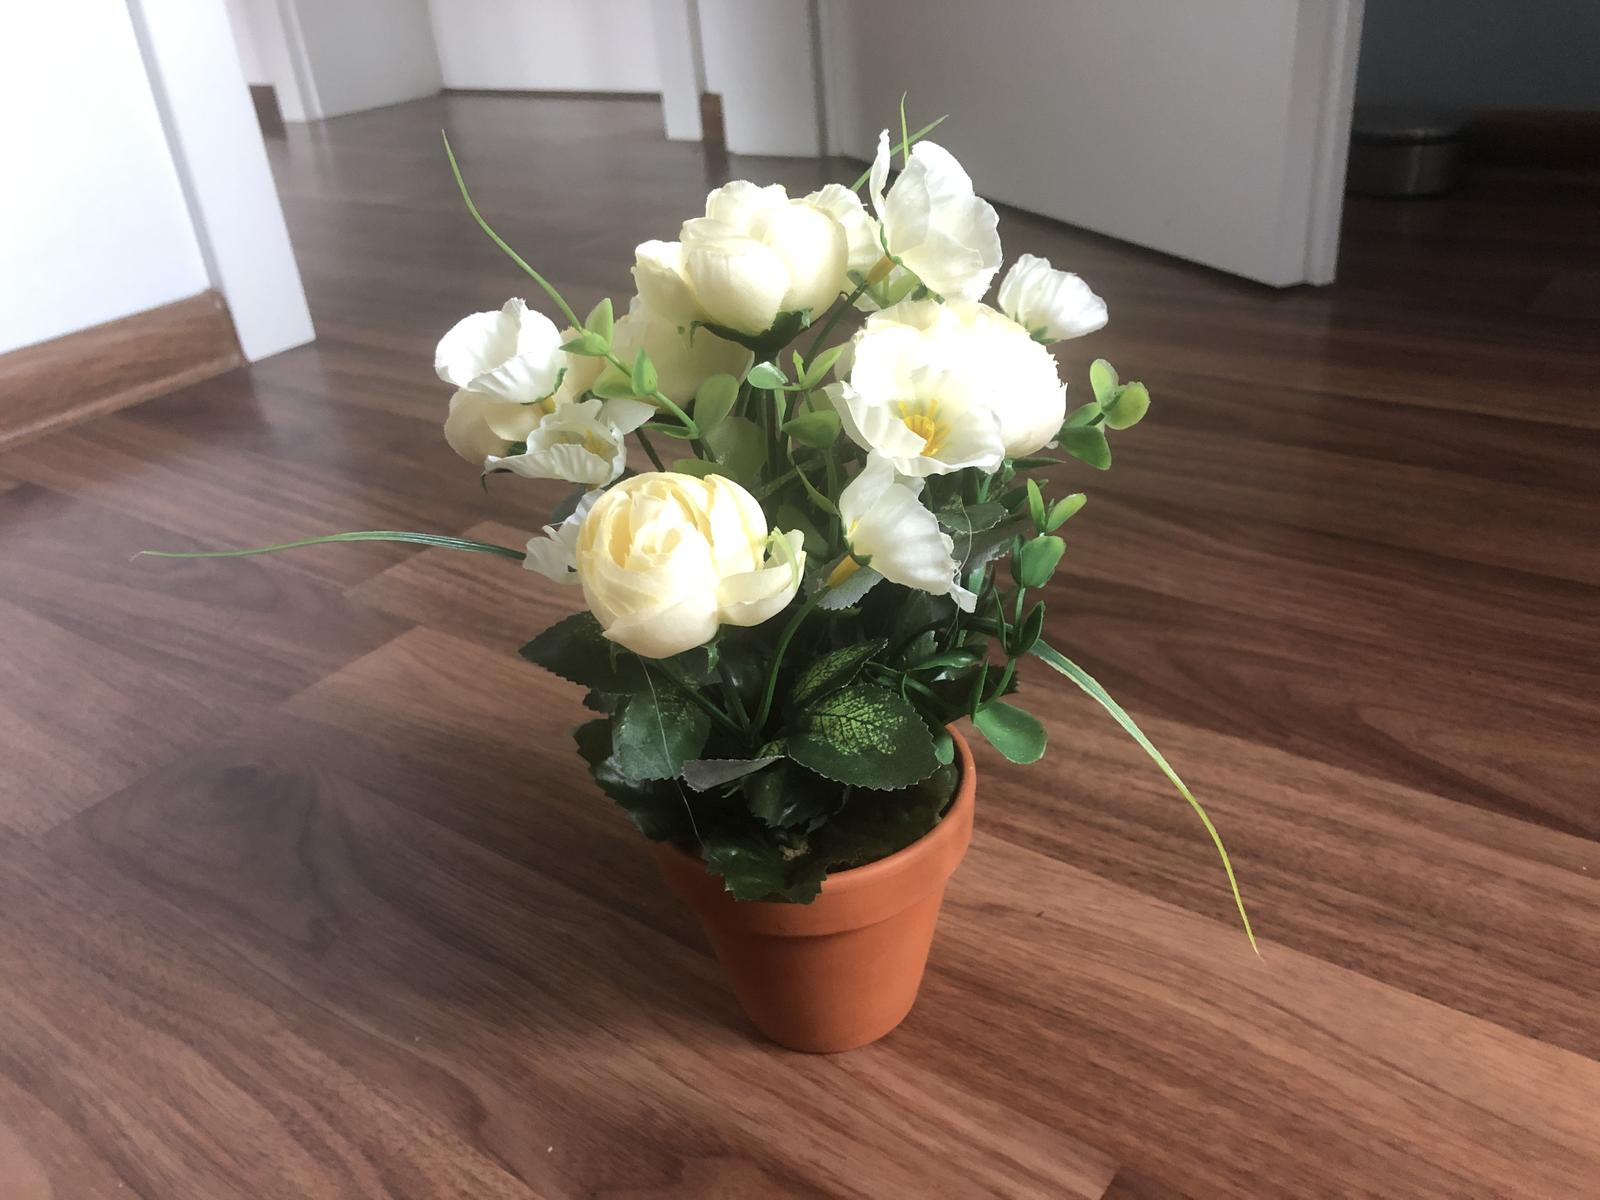 Růžičky bílo žluté v květináčku - Obrázek č. 1